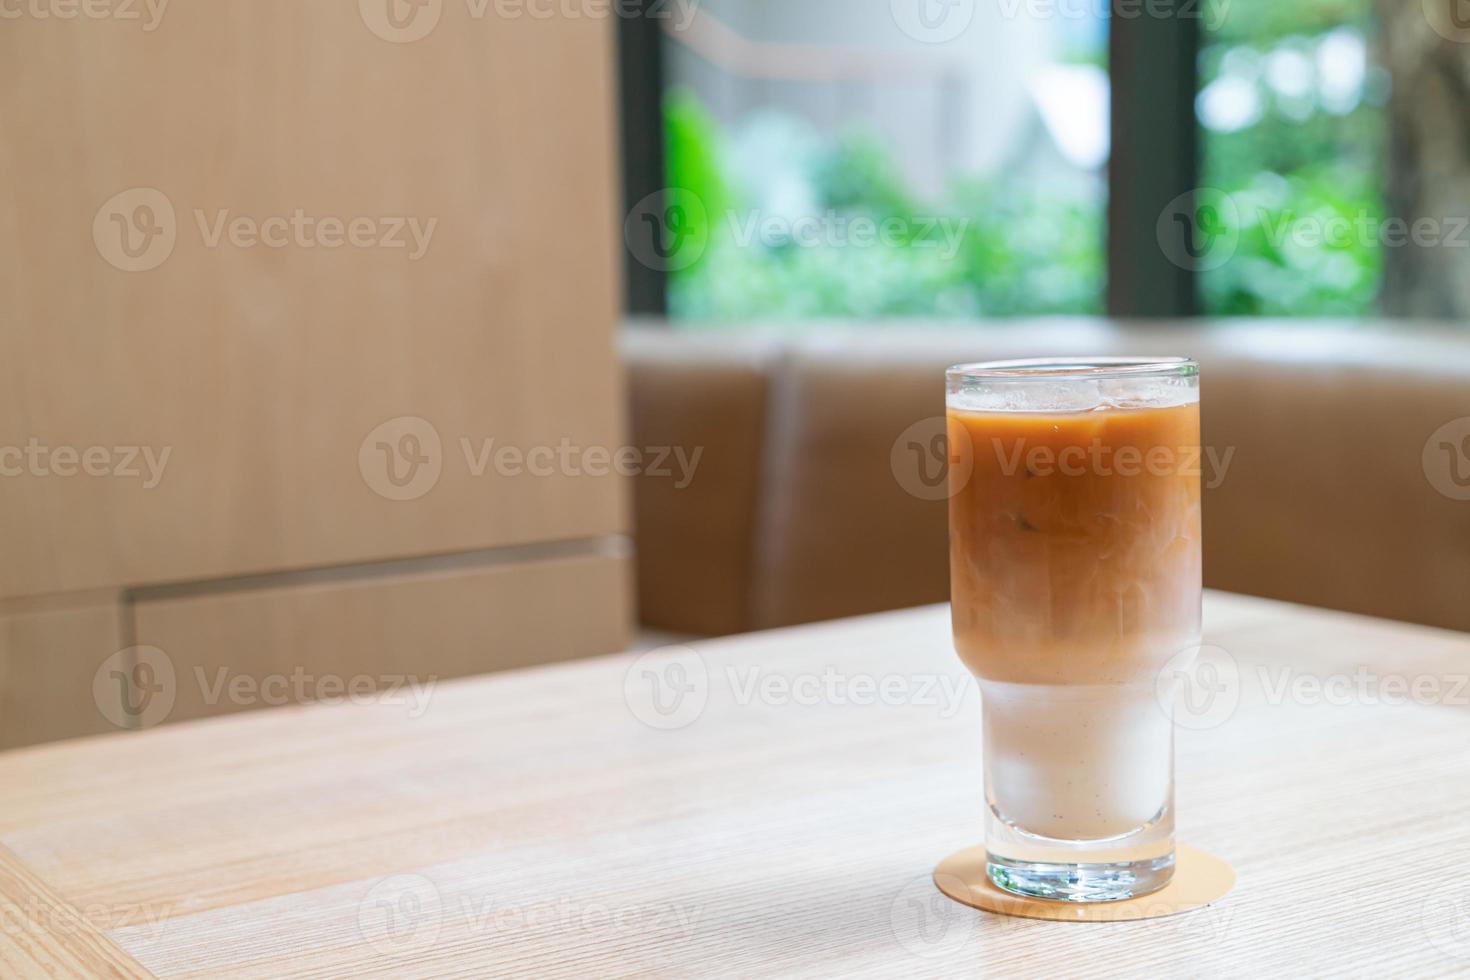 Verre à café latte glacé dans un café-restaurant et un restaurant photo